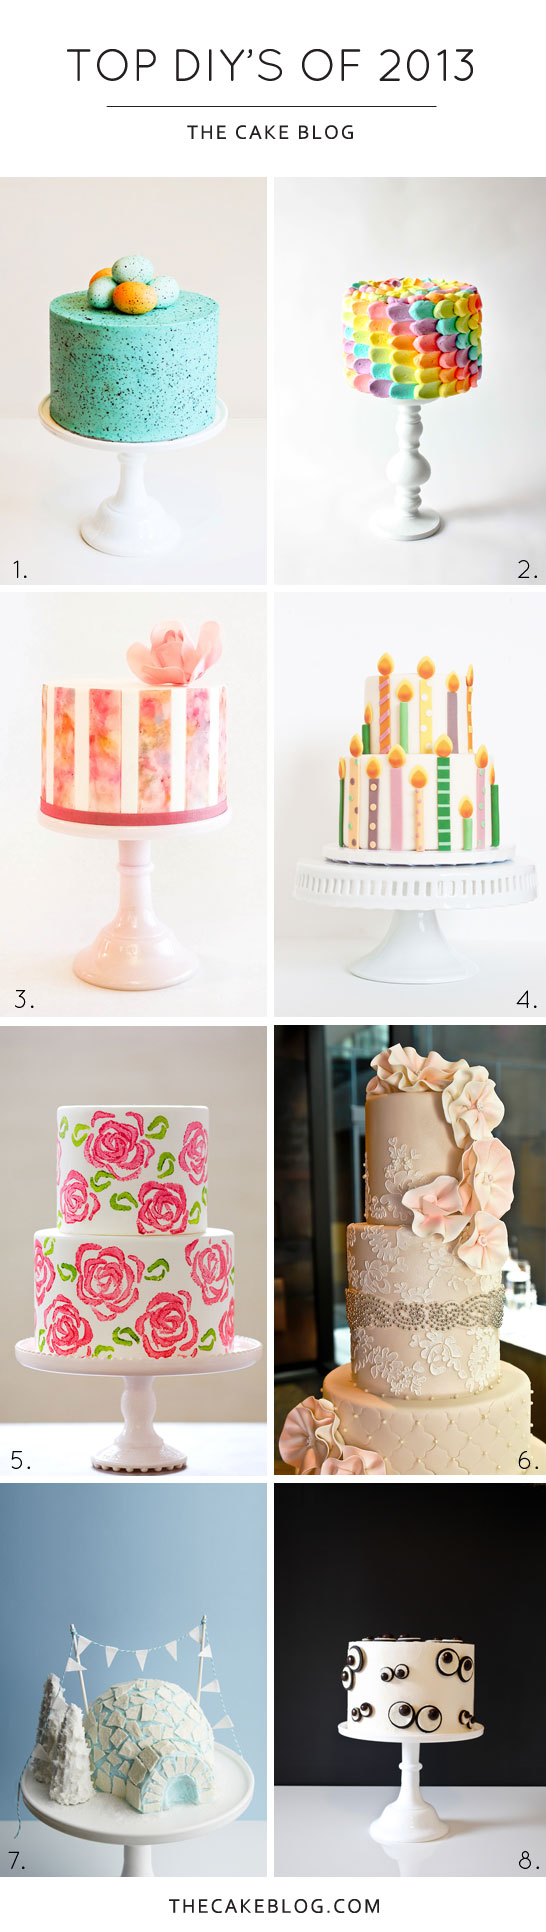 Top DIY Cake Tutorials of 2013 | TheCakeBlog.com